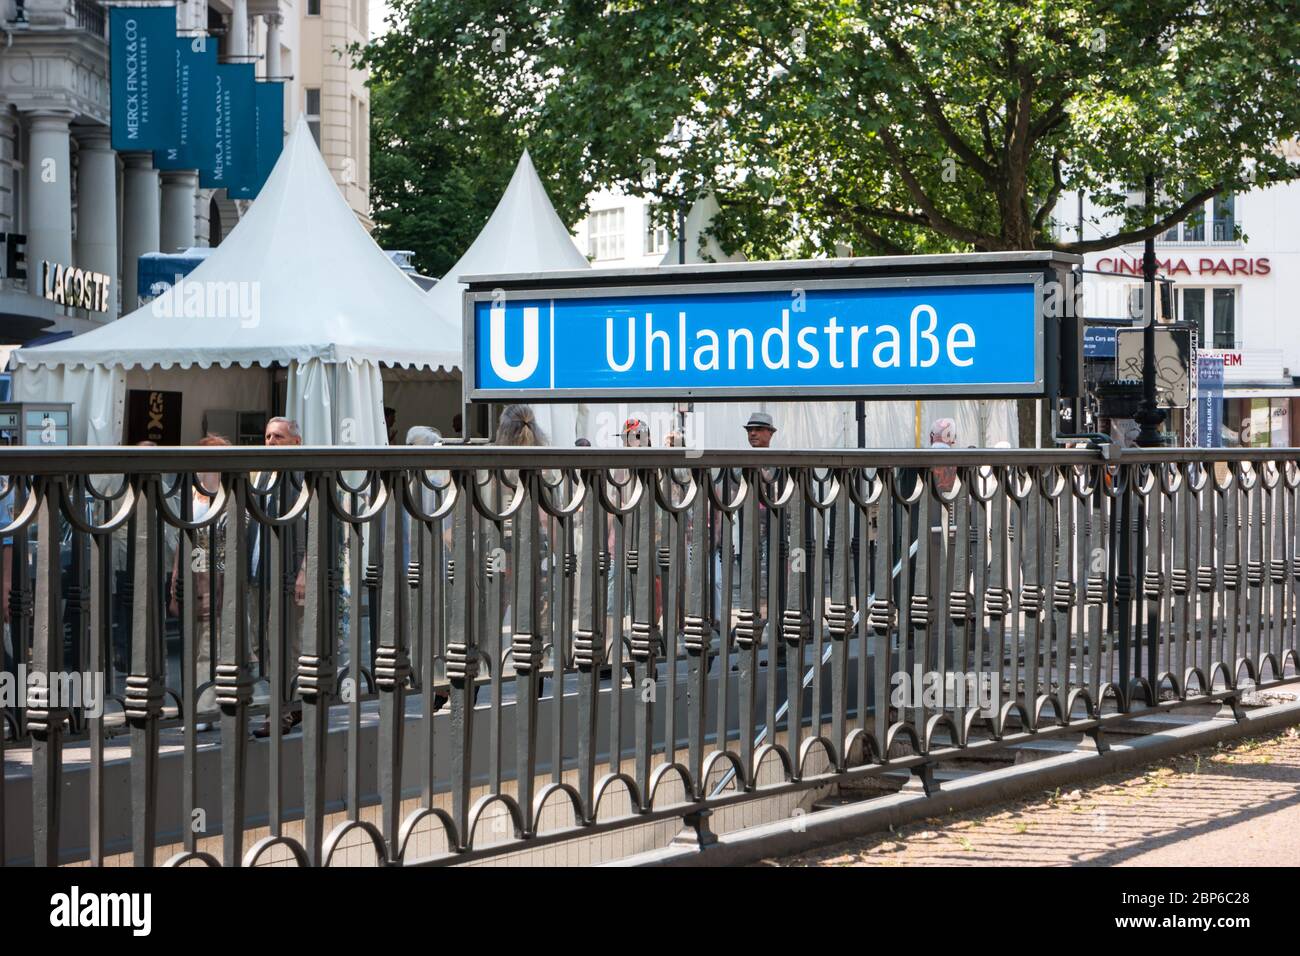 BERLIN - Juni 05, 2016: städtische U-Bahn Station im Zentrum der Stadt (U-Bahn) - Ulandstrasse. Stockfoto